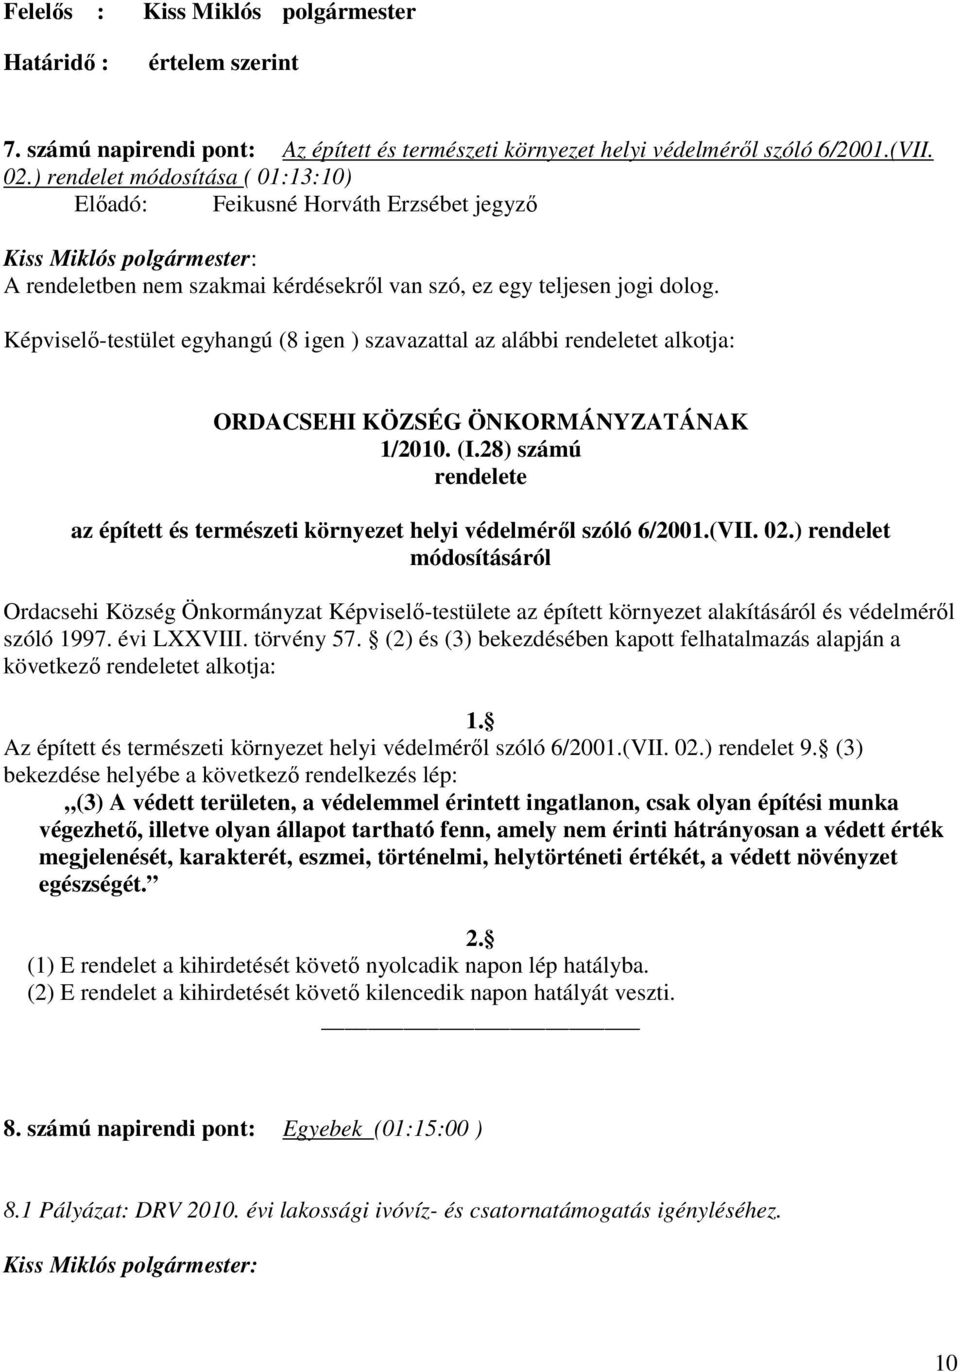 Képviselı-testület egyhangú (8 igen ) szavazattal az alábbi rendeletet alkotja: ORDACSEHI KÖZSÉG ÖNKORMÁNYZATÁNAK 1/2010. (I.